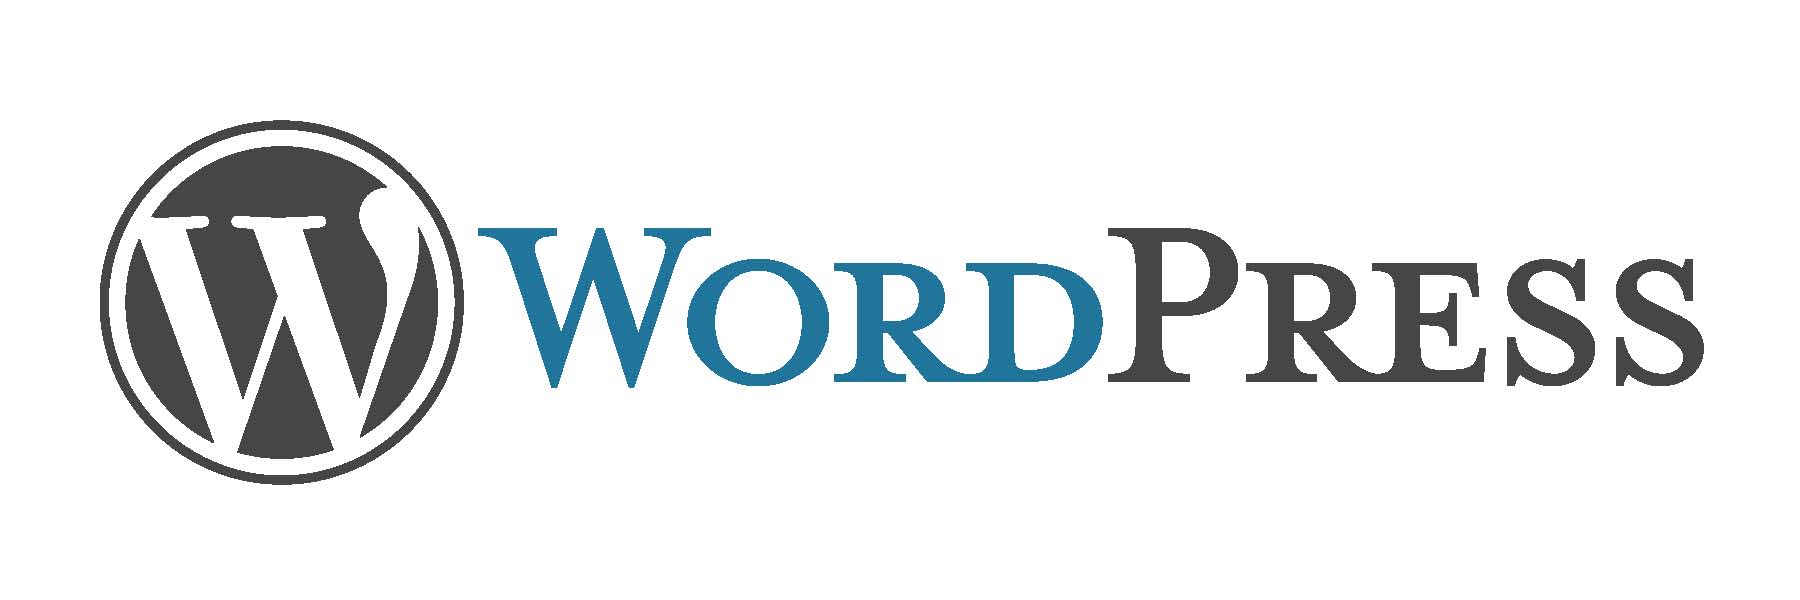 wordpress logo.jpg